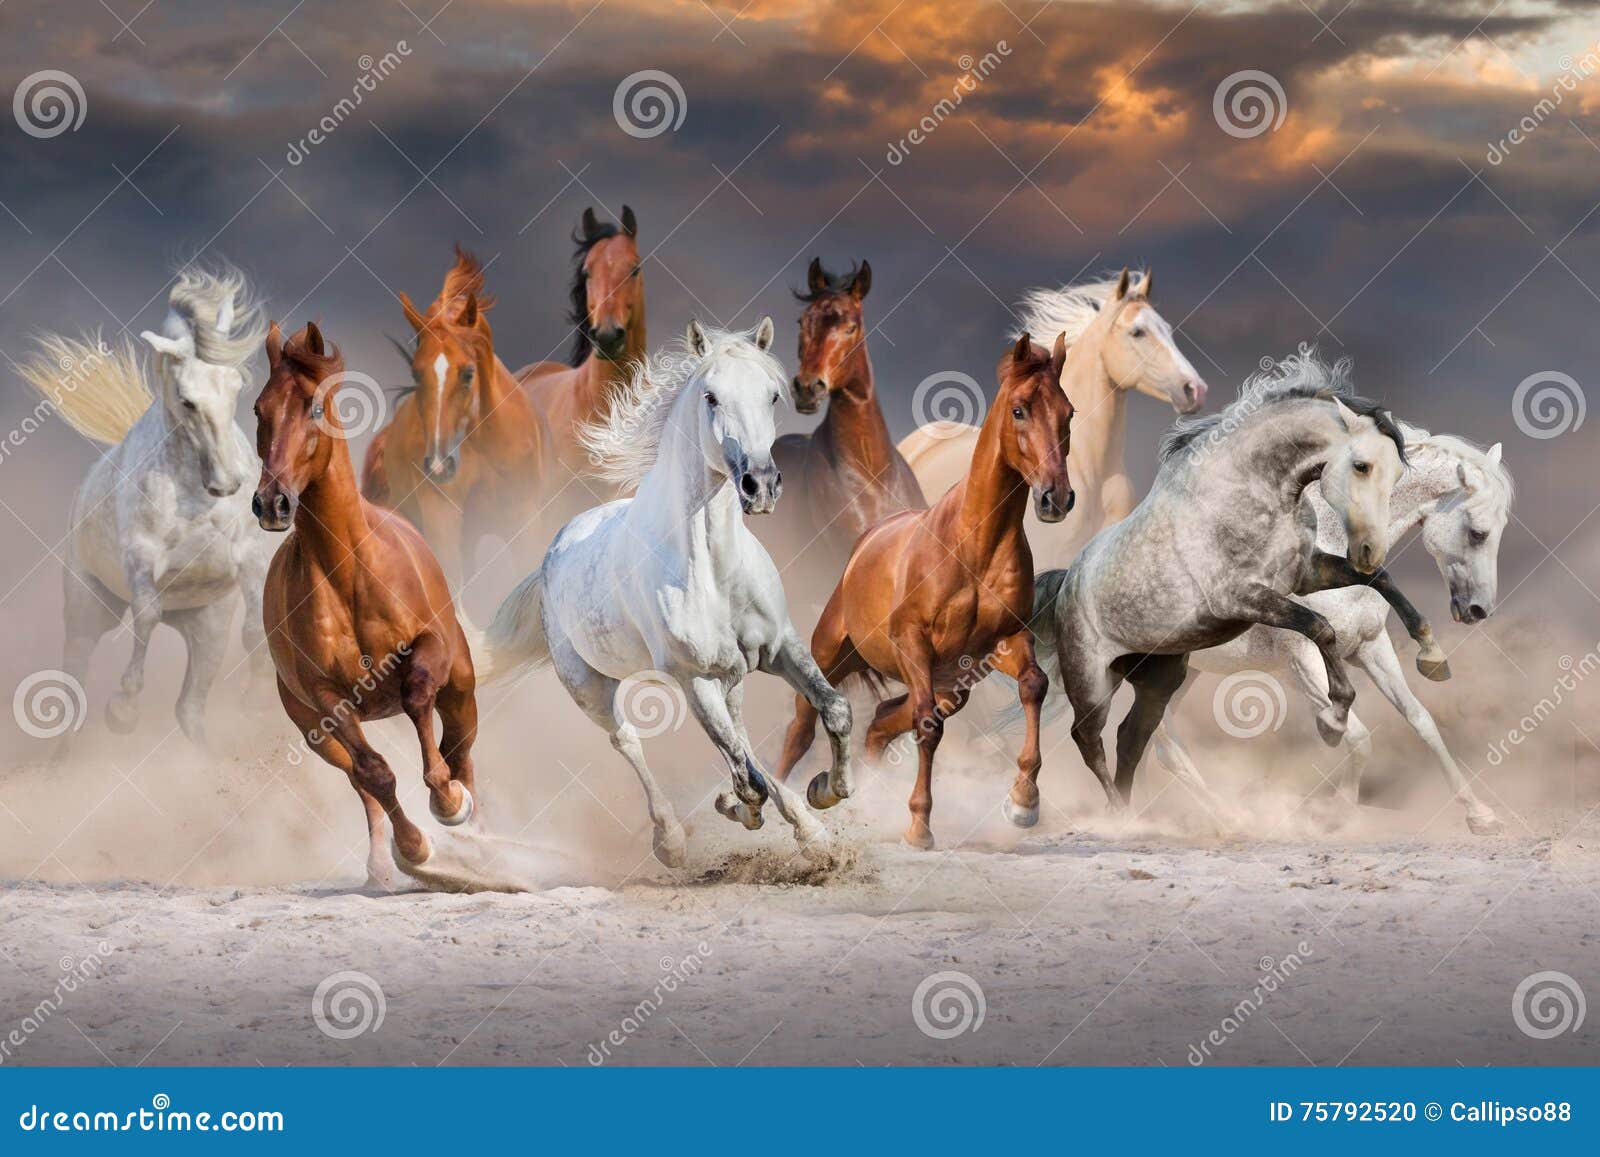 paarden lopen snel stock Image of woestijn, geïsoleerd - 75792520